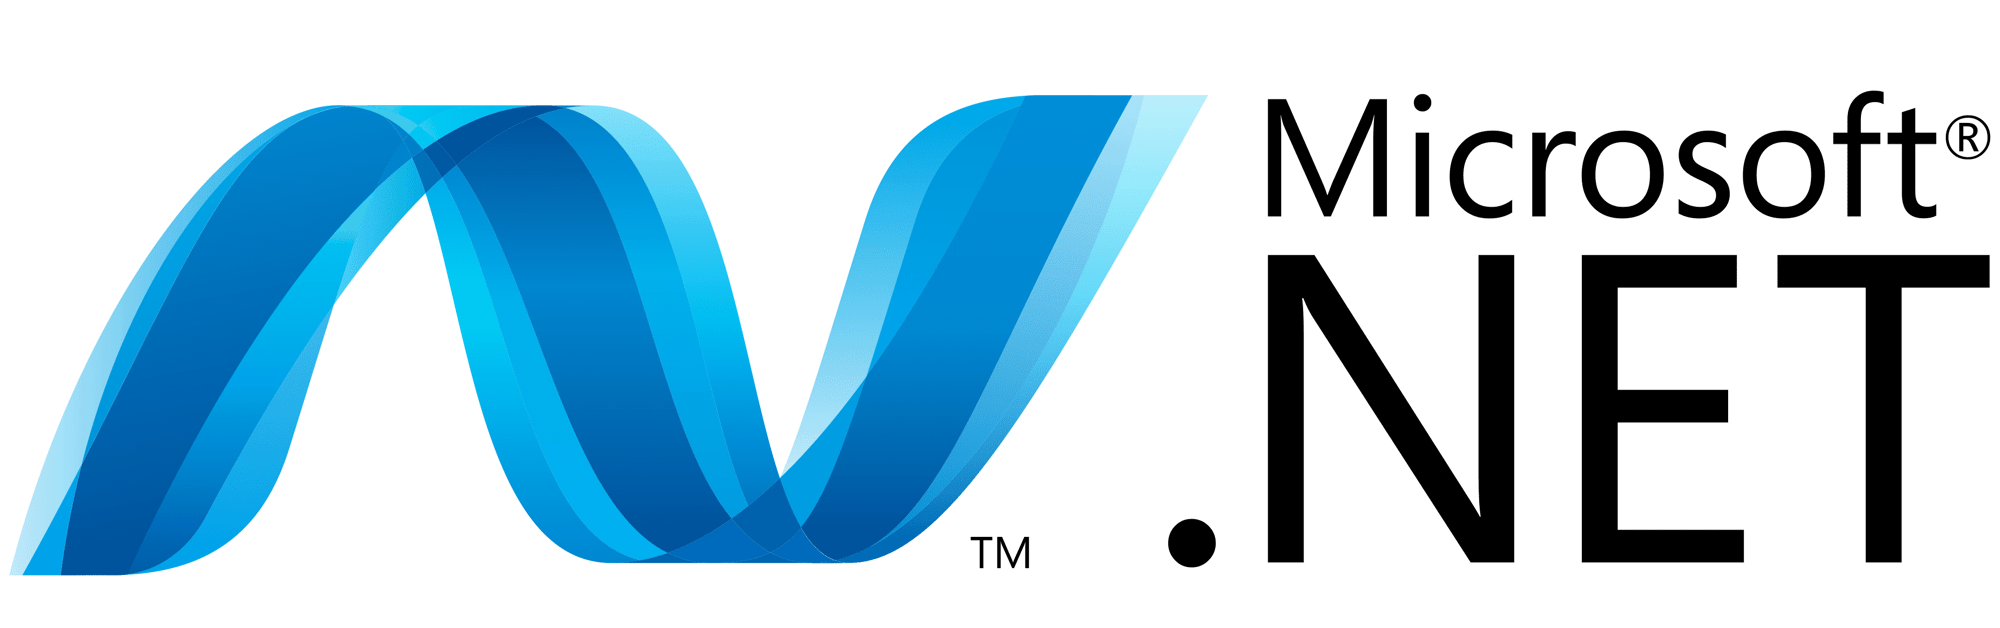 NET-Logo